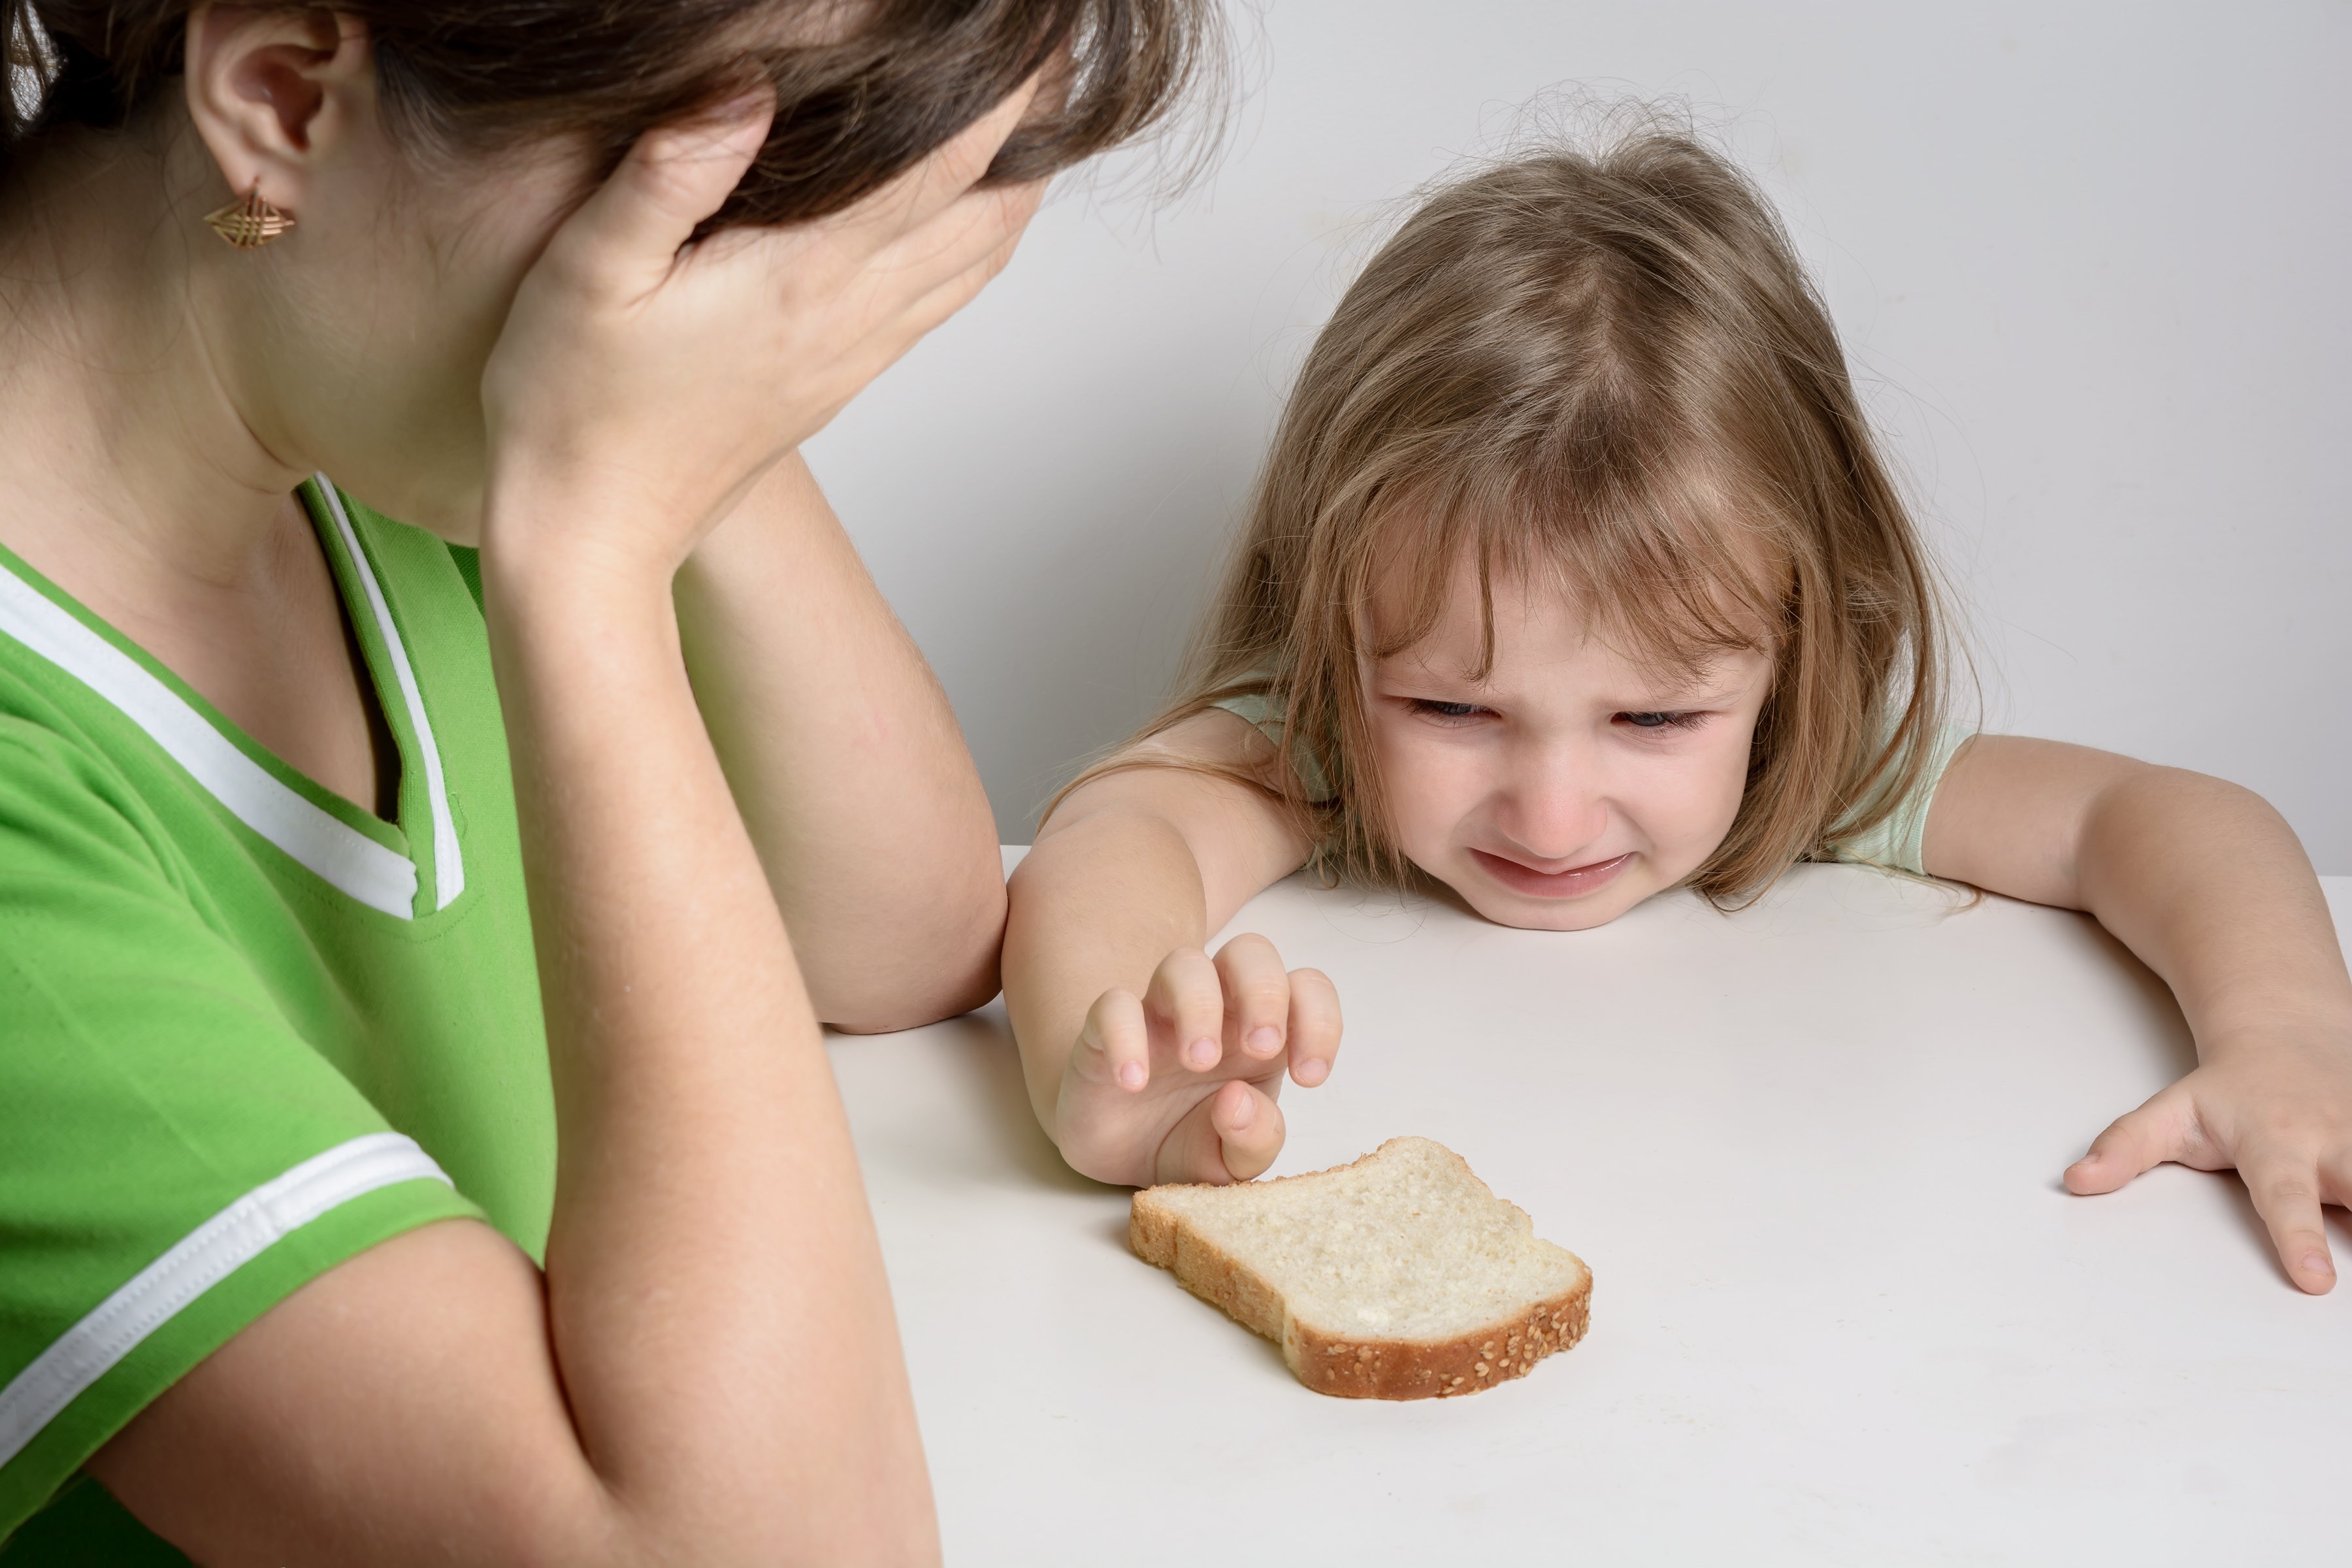 Eine traurige Mutter und eine hungrige Tochter | Quelle: Shutterstock